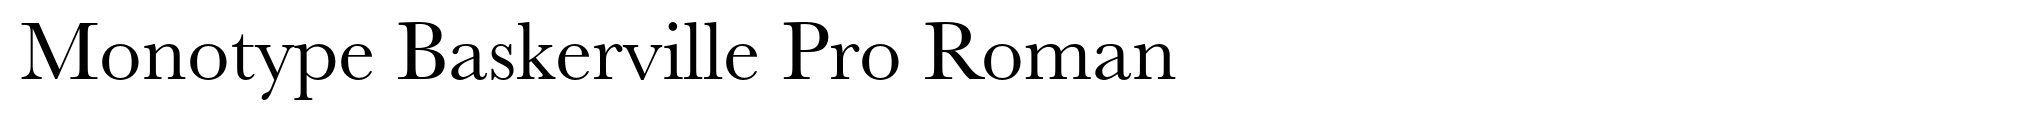 Monotype Baskerville Pro Roman image